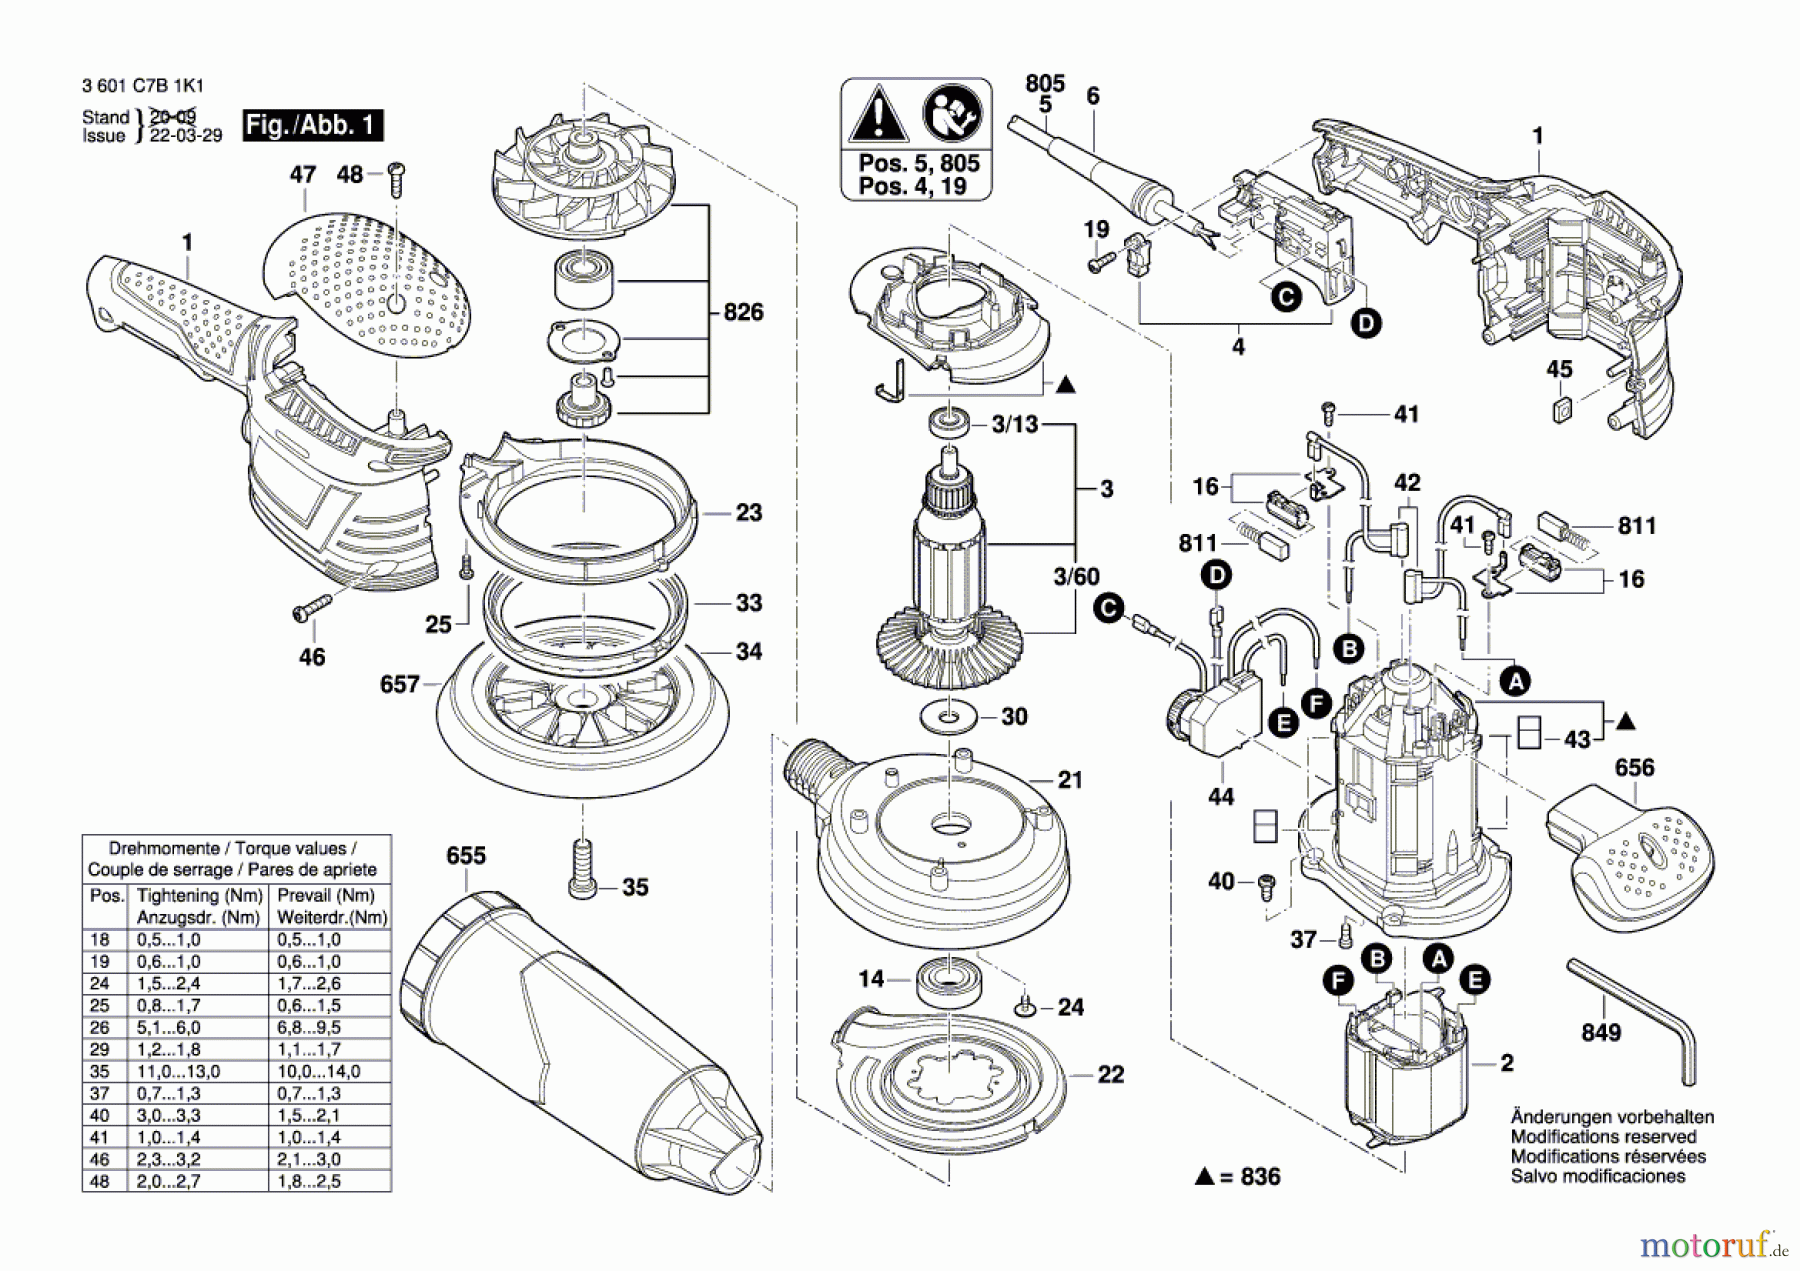  Bosch Werkzeug Exzenterschleifer GEX 150 AVE Seite 1